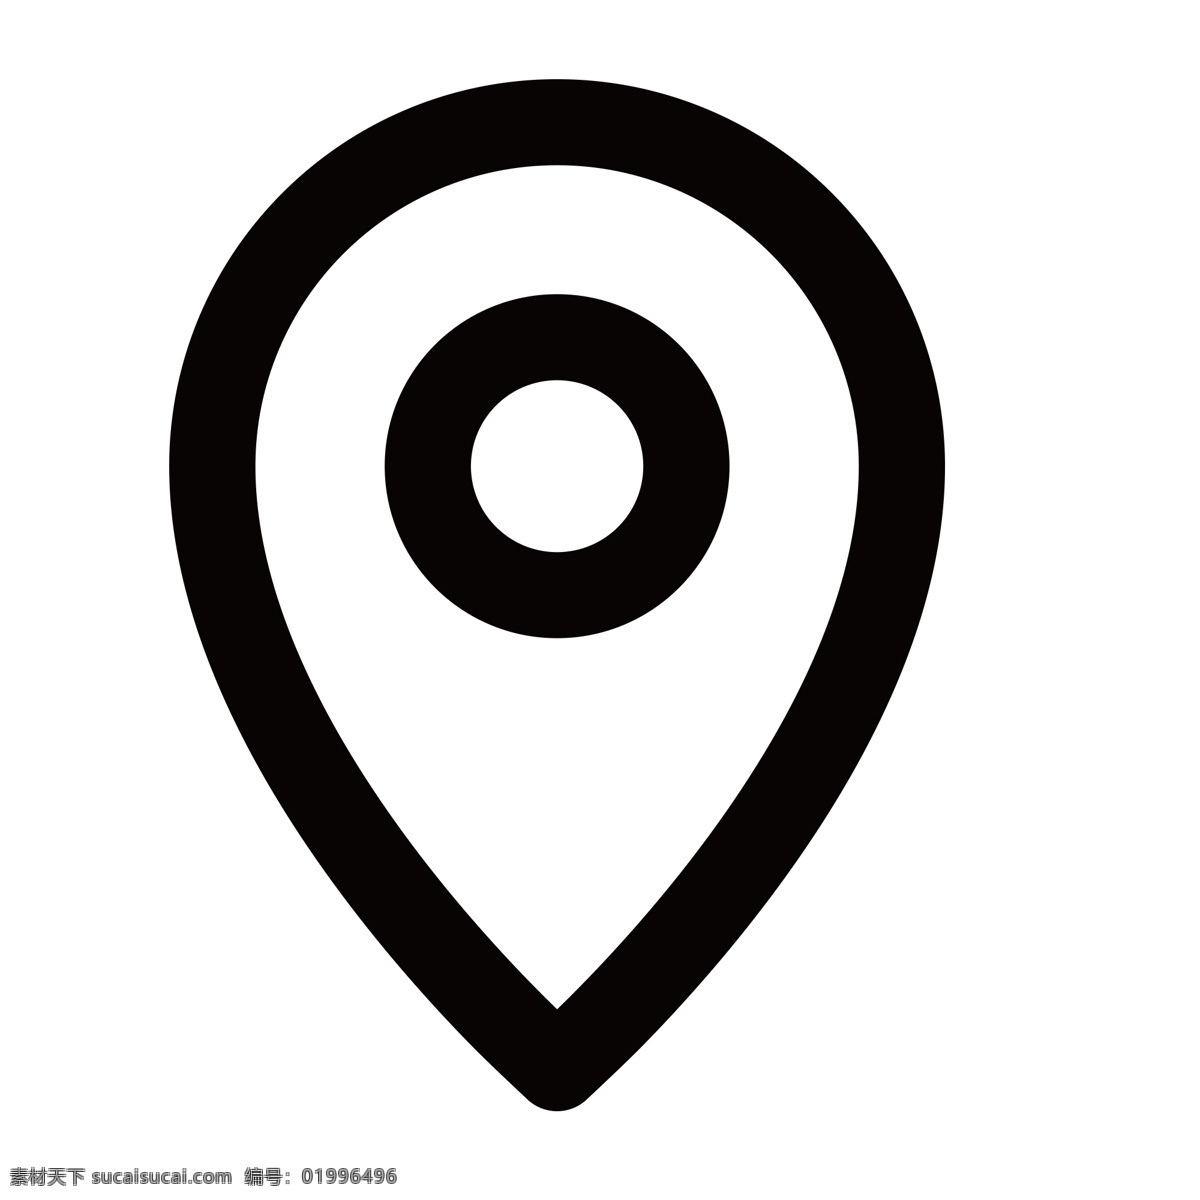 位置导航 导航图标 扁平化ui ui图标 手机图标 界面ui 网页ui h5图标